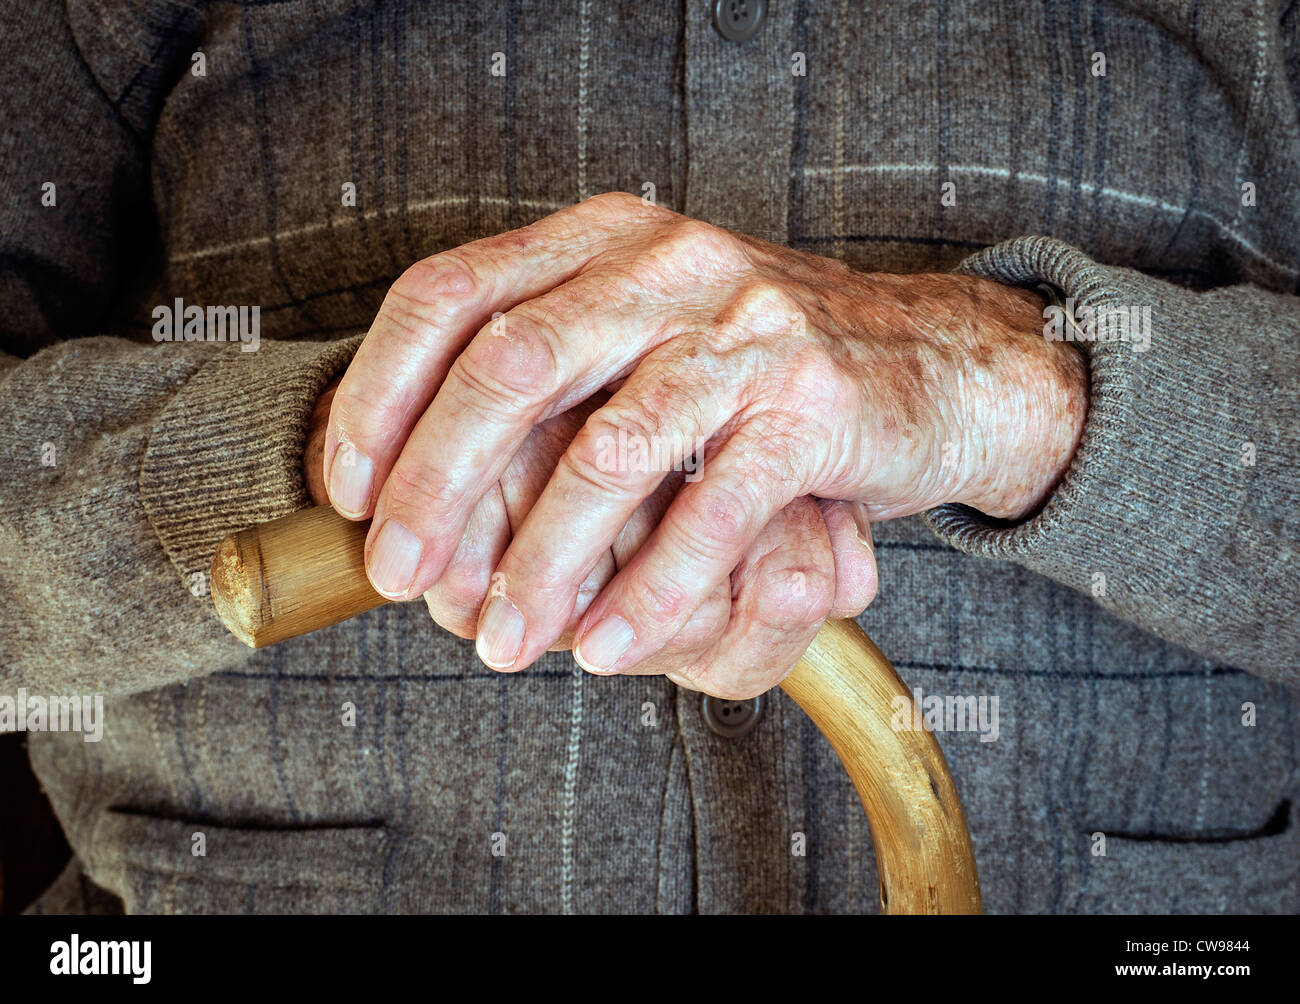 Artritici mature le mani di un uomo anziano con Articolazioni gonfie, a riposo su un bastone da passeggio. Regno Unito Foto Stock